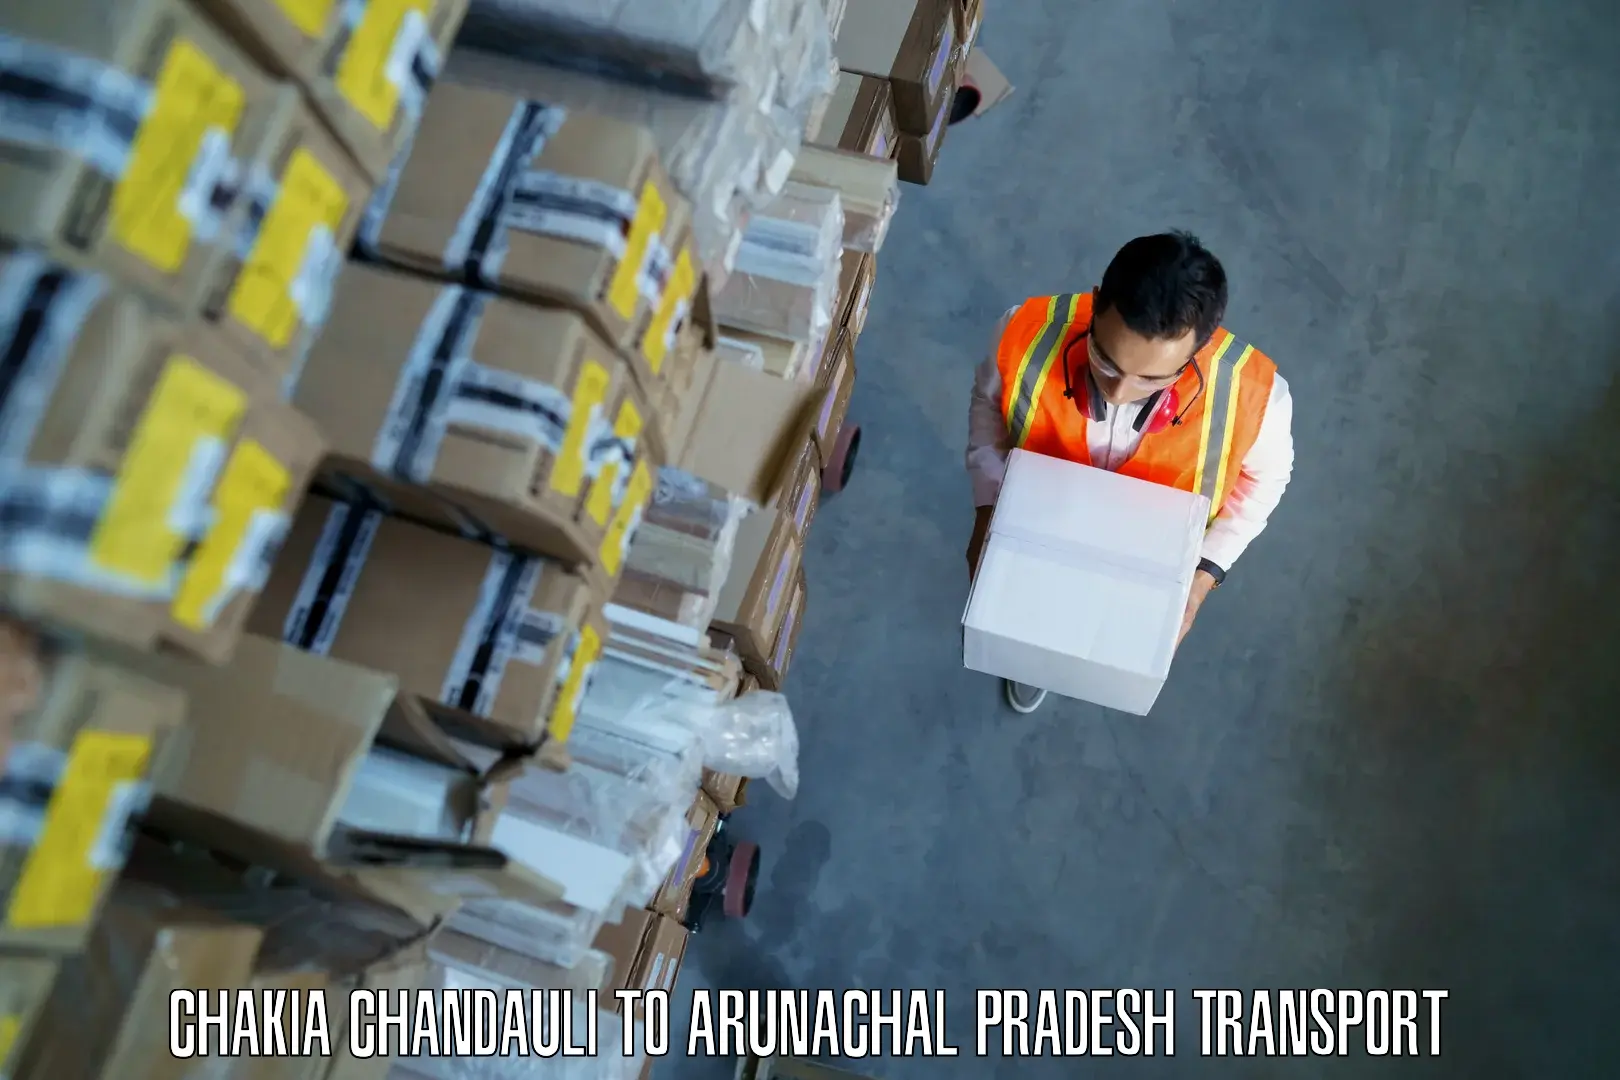 Vehicle parcel service Chakia Chandauli to Aalo